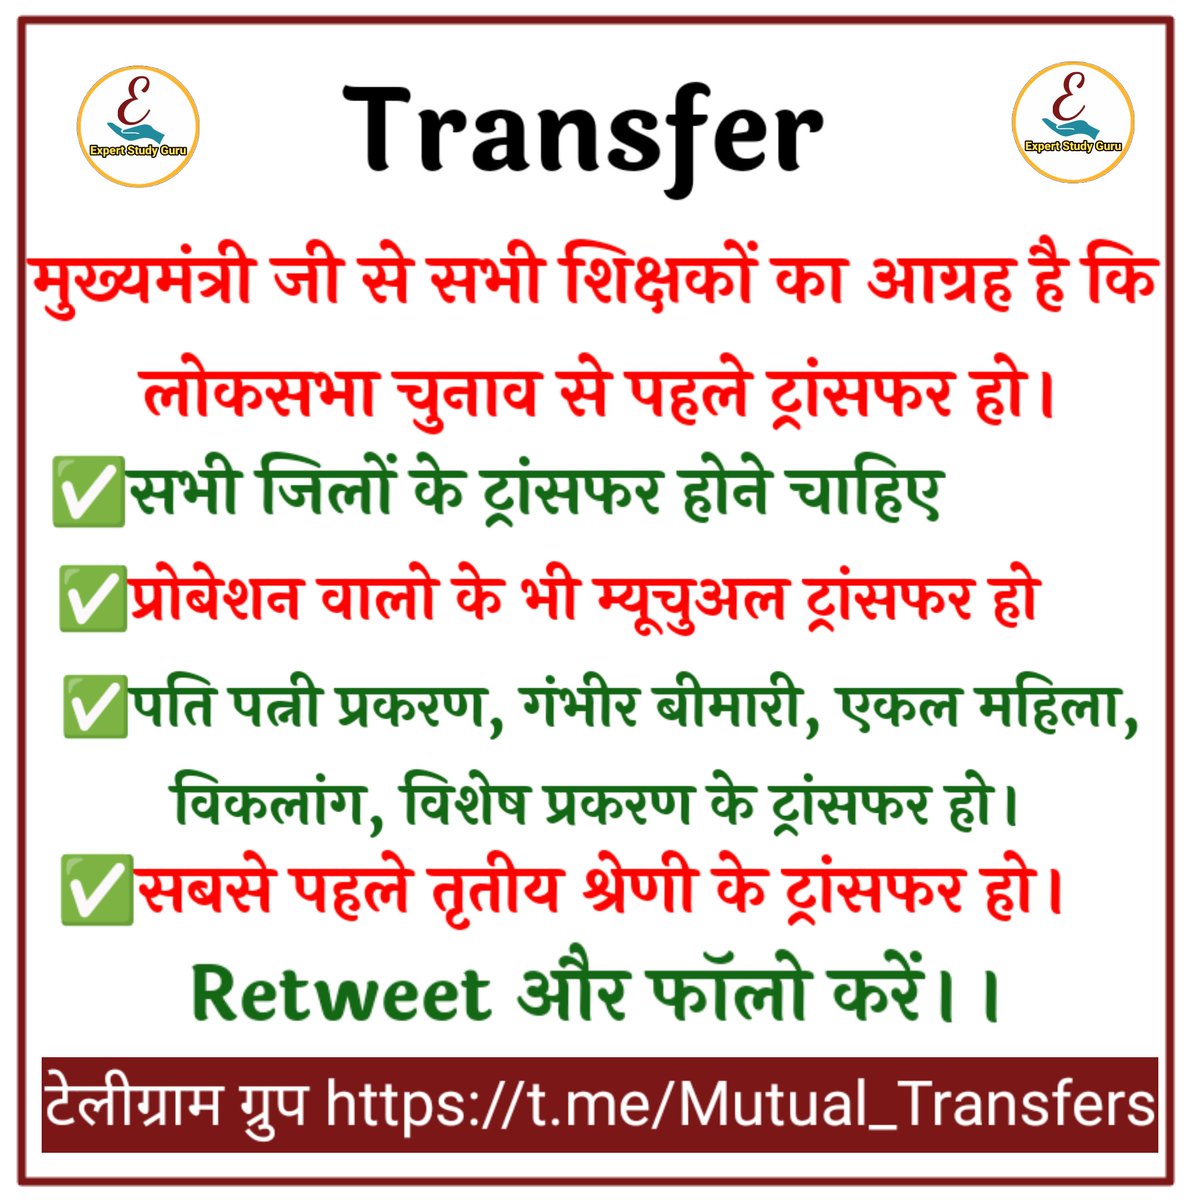 #शिक्षक_तबादले के लिए राजस्थान के सब शिक्षको की उम्मीद अब लोकसभा चुनाव से पहले ट्रांसफर की है। मुख्यमंत्री जी लाखो शिक्षको की पुकार सुने। @BhajanlalBjp @ExpertStudyGuru @MaurayKiran अगर आप शिक्षक है तो रिट्विट और फॉलो जरूर करे Join Group 👇👇👇 t.me/Mutual_Transfe…